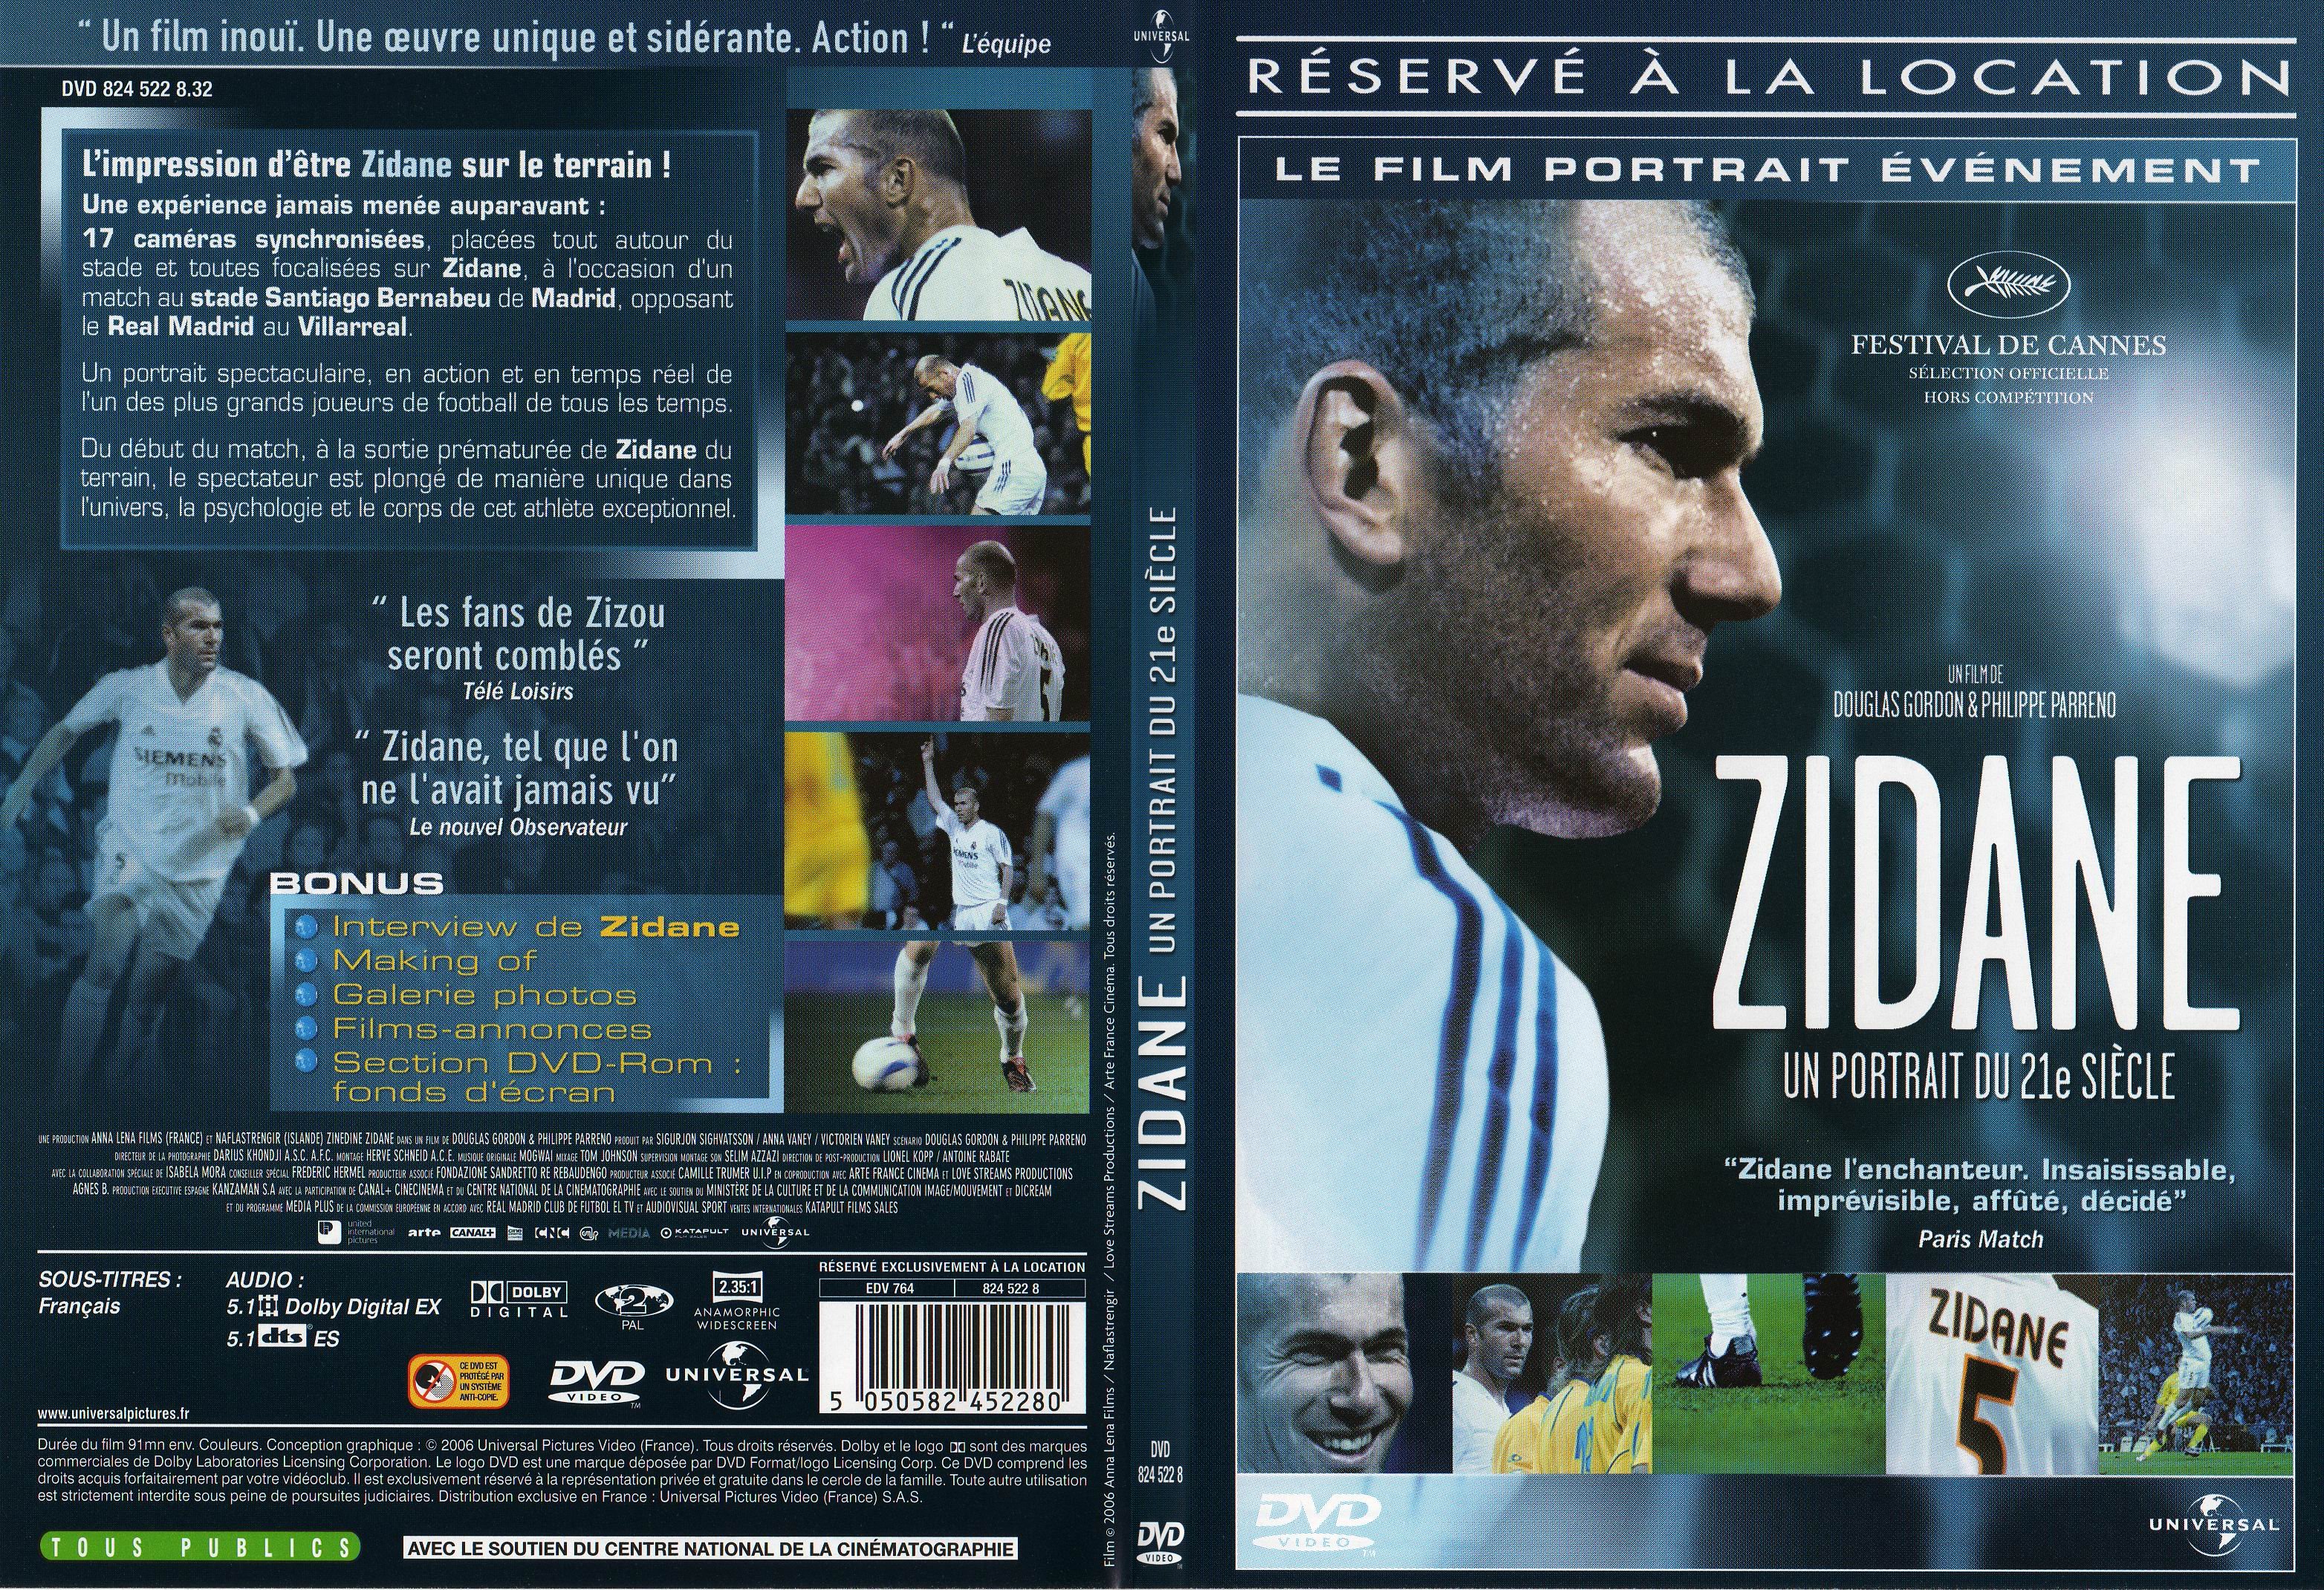 Jaquette DVD Zidane un portrait du XXIeme siecle - SLIM v2